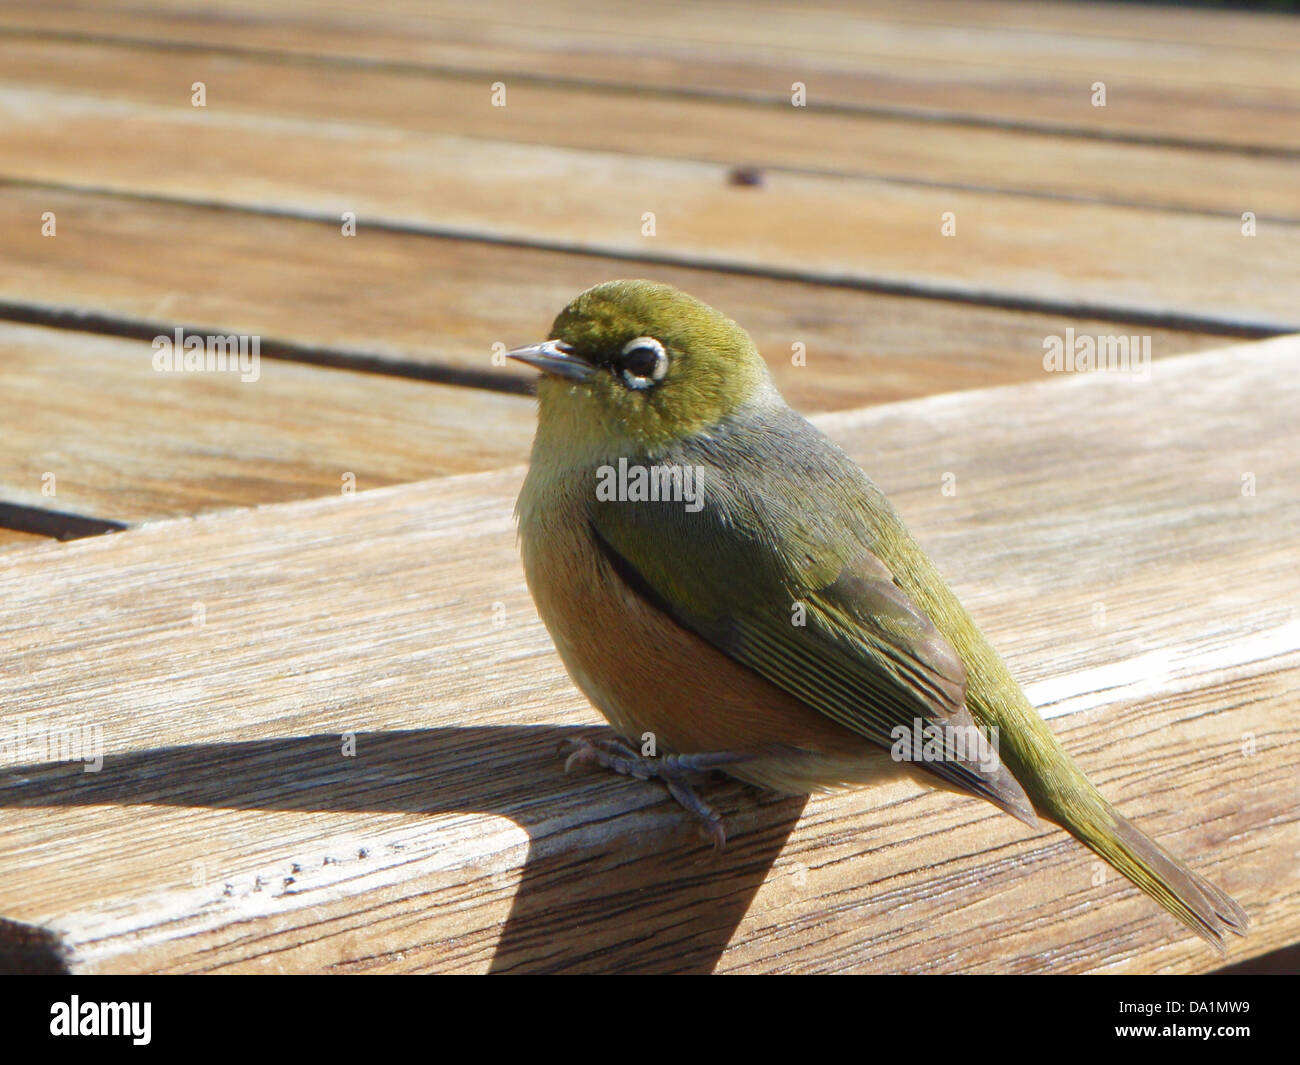 Un poco de verde pájaro conocido como ojo de cera o silvereye encaramado sobre un parque de madera tabla/banco. Foto de stock